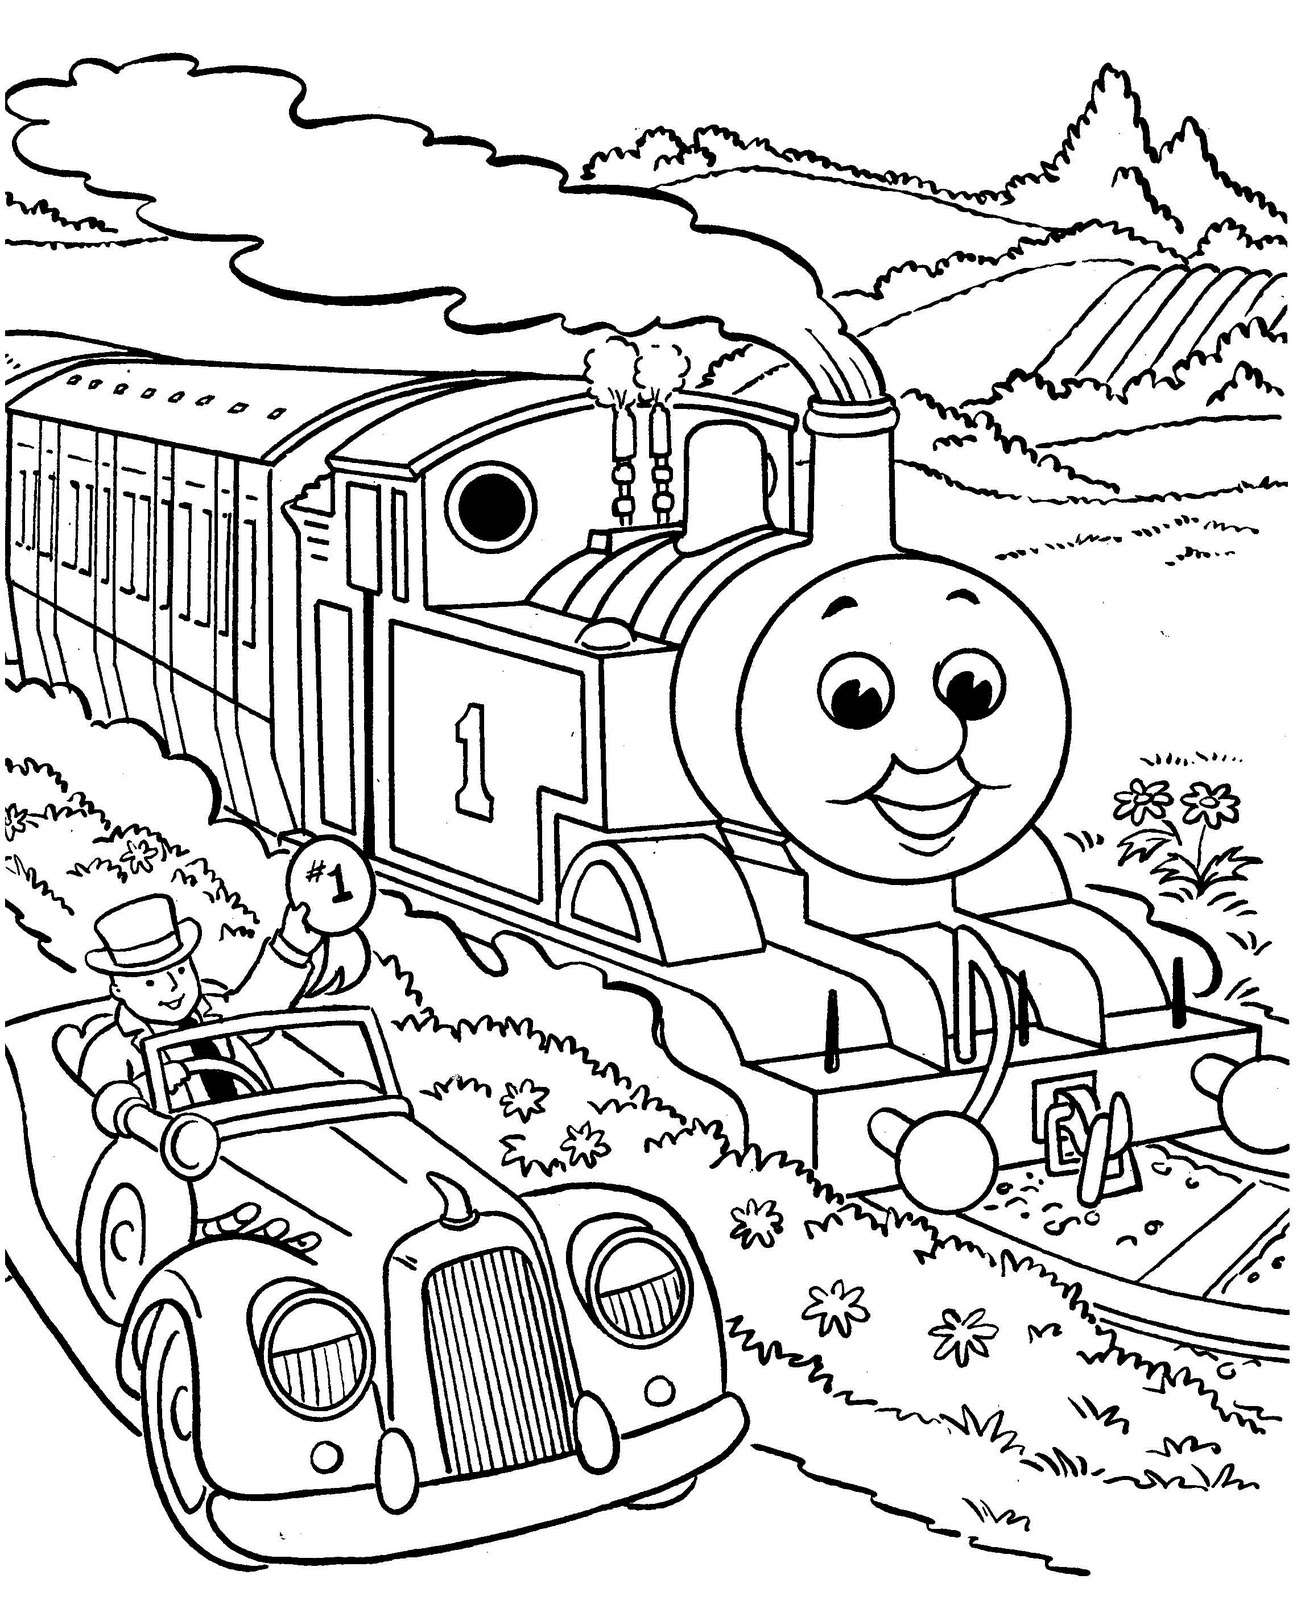 disegni da colorare gratis thomas il trenino con sindaco in macchina